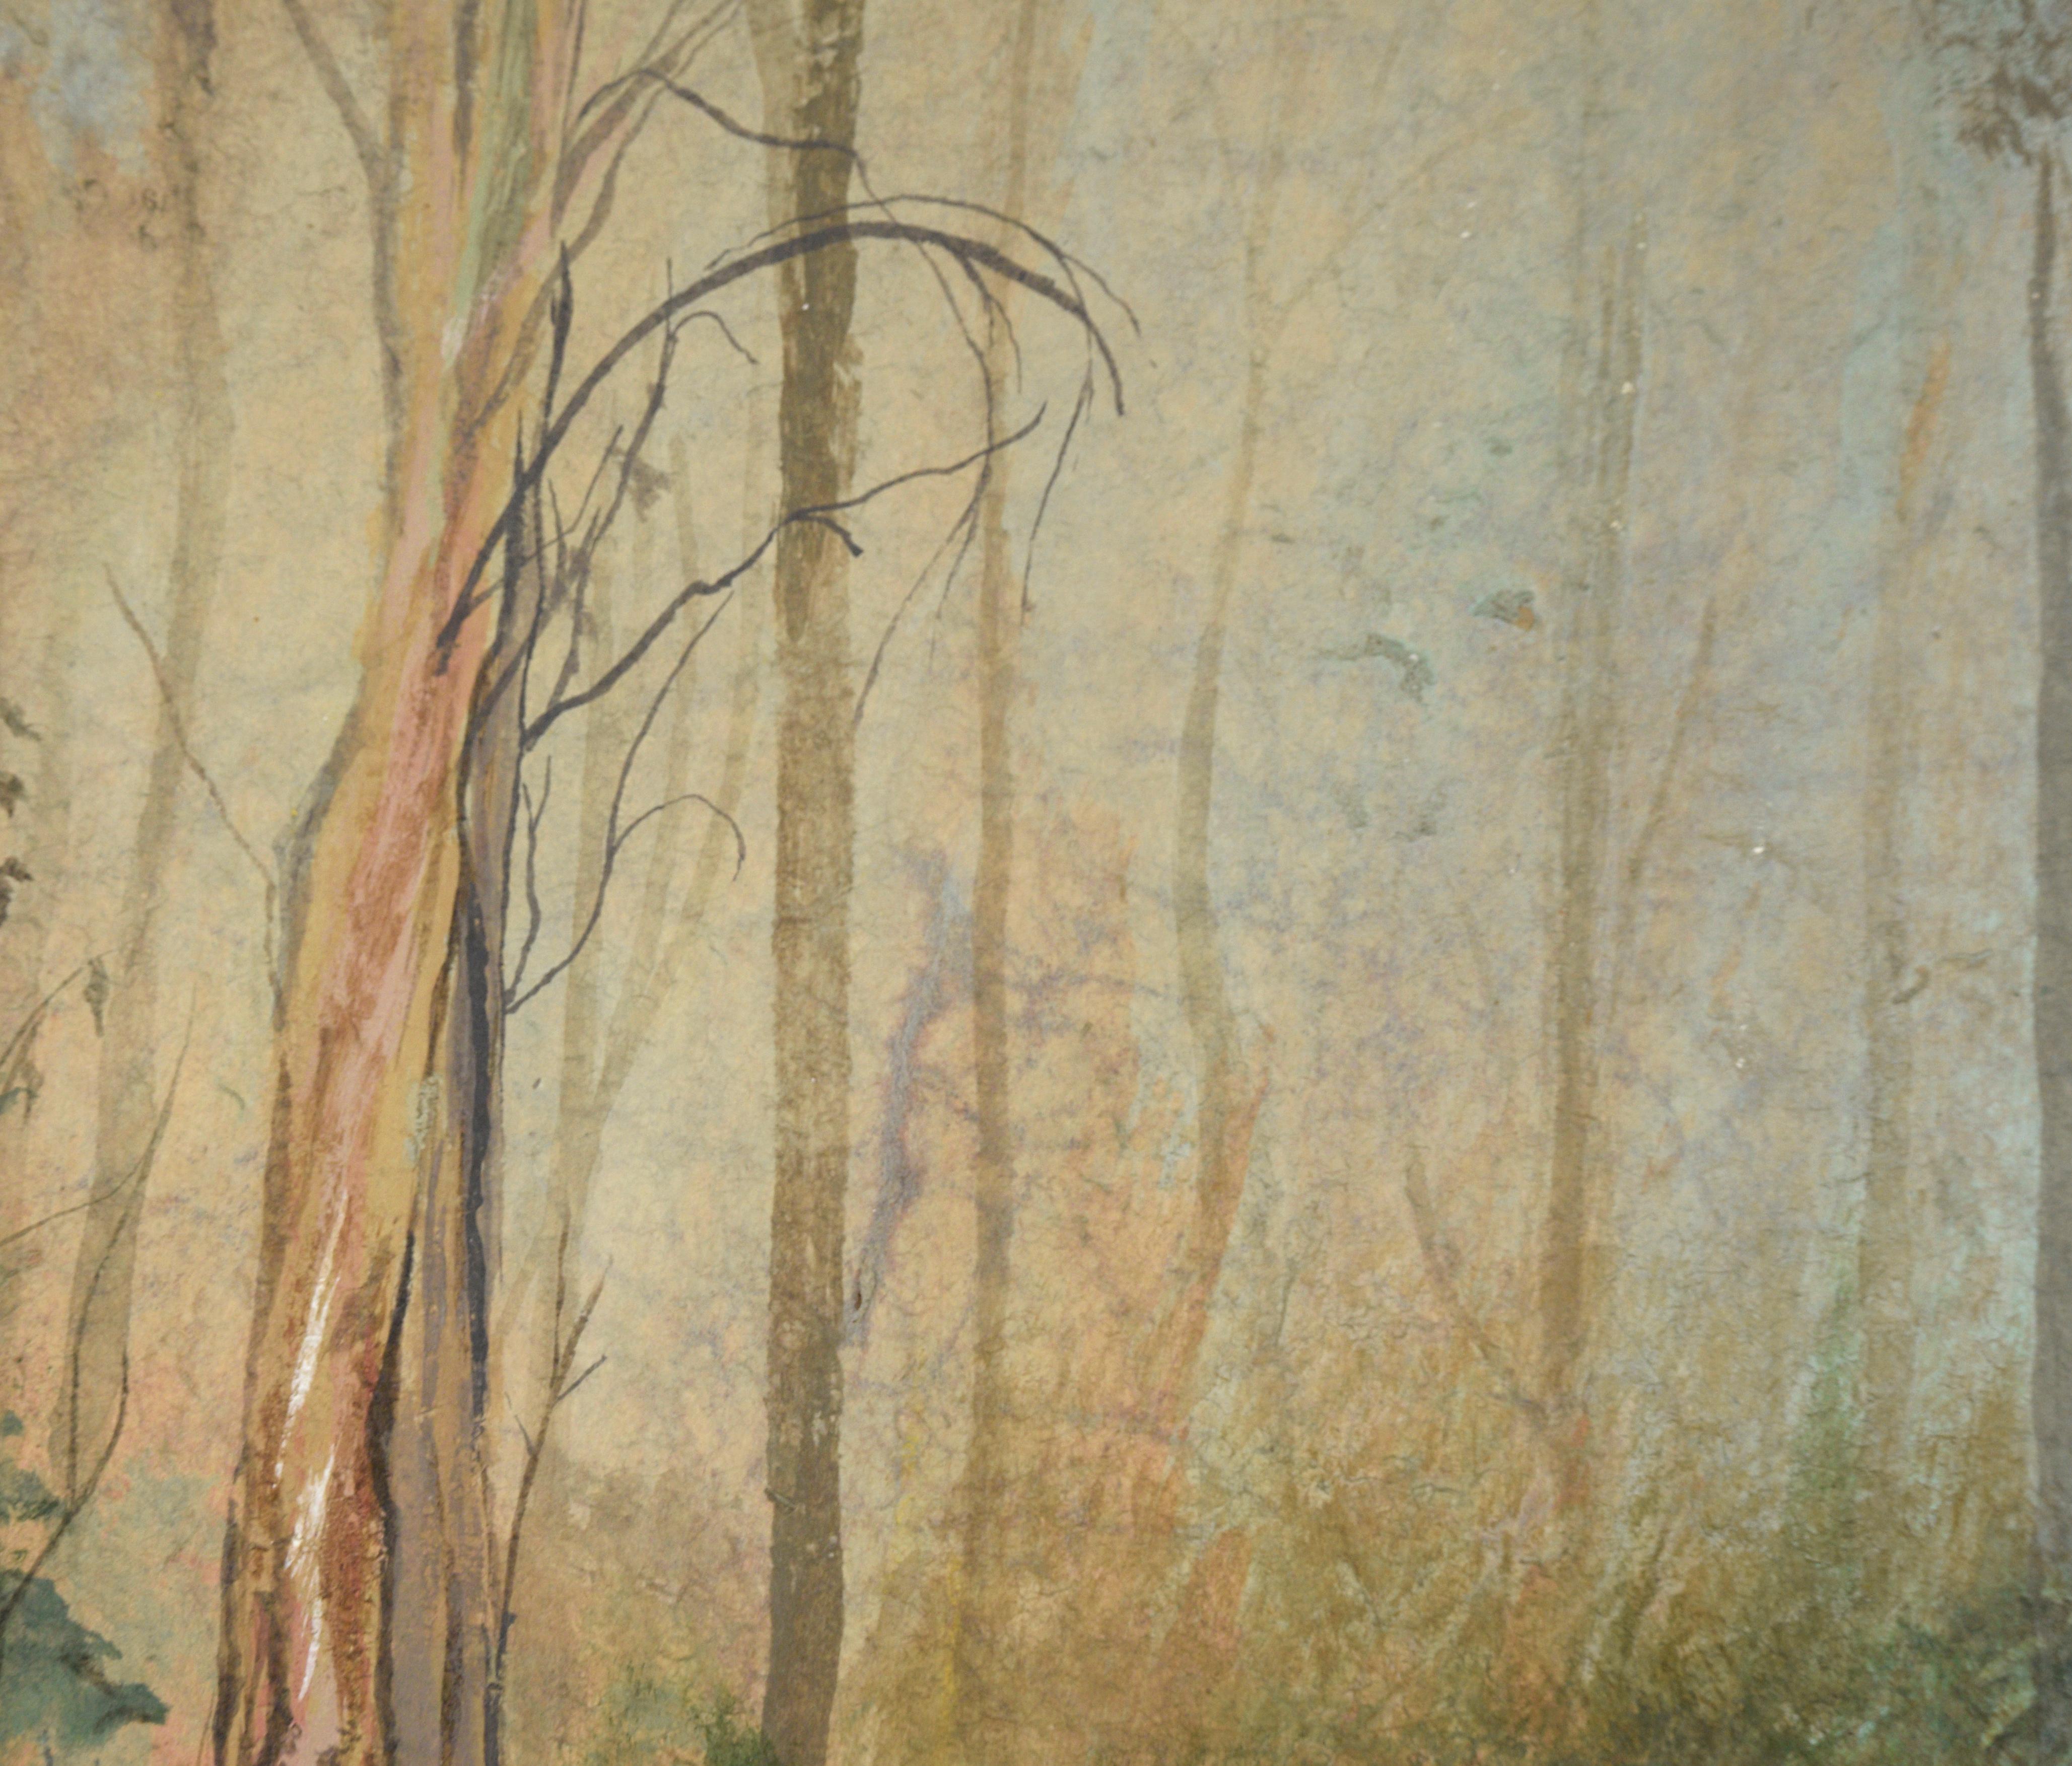 Une belle scène forestière atmosphérique de l'artiste américain Gary Hicks (Américain, 20e siècle), vers 1970. Un petit sentier invite le spectateur à pénétrer dans ce paysage forestier brumeux, où les couches d'arbres se dissipent au loin. 

Signé